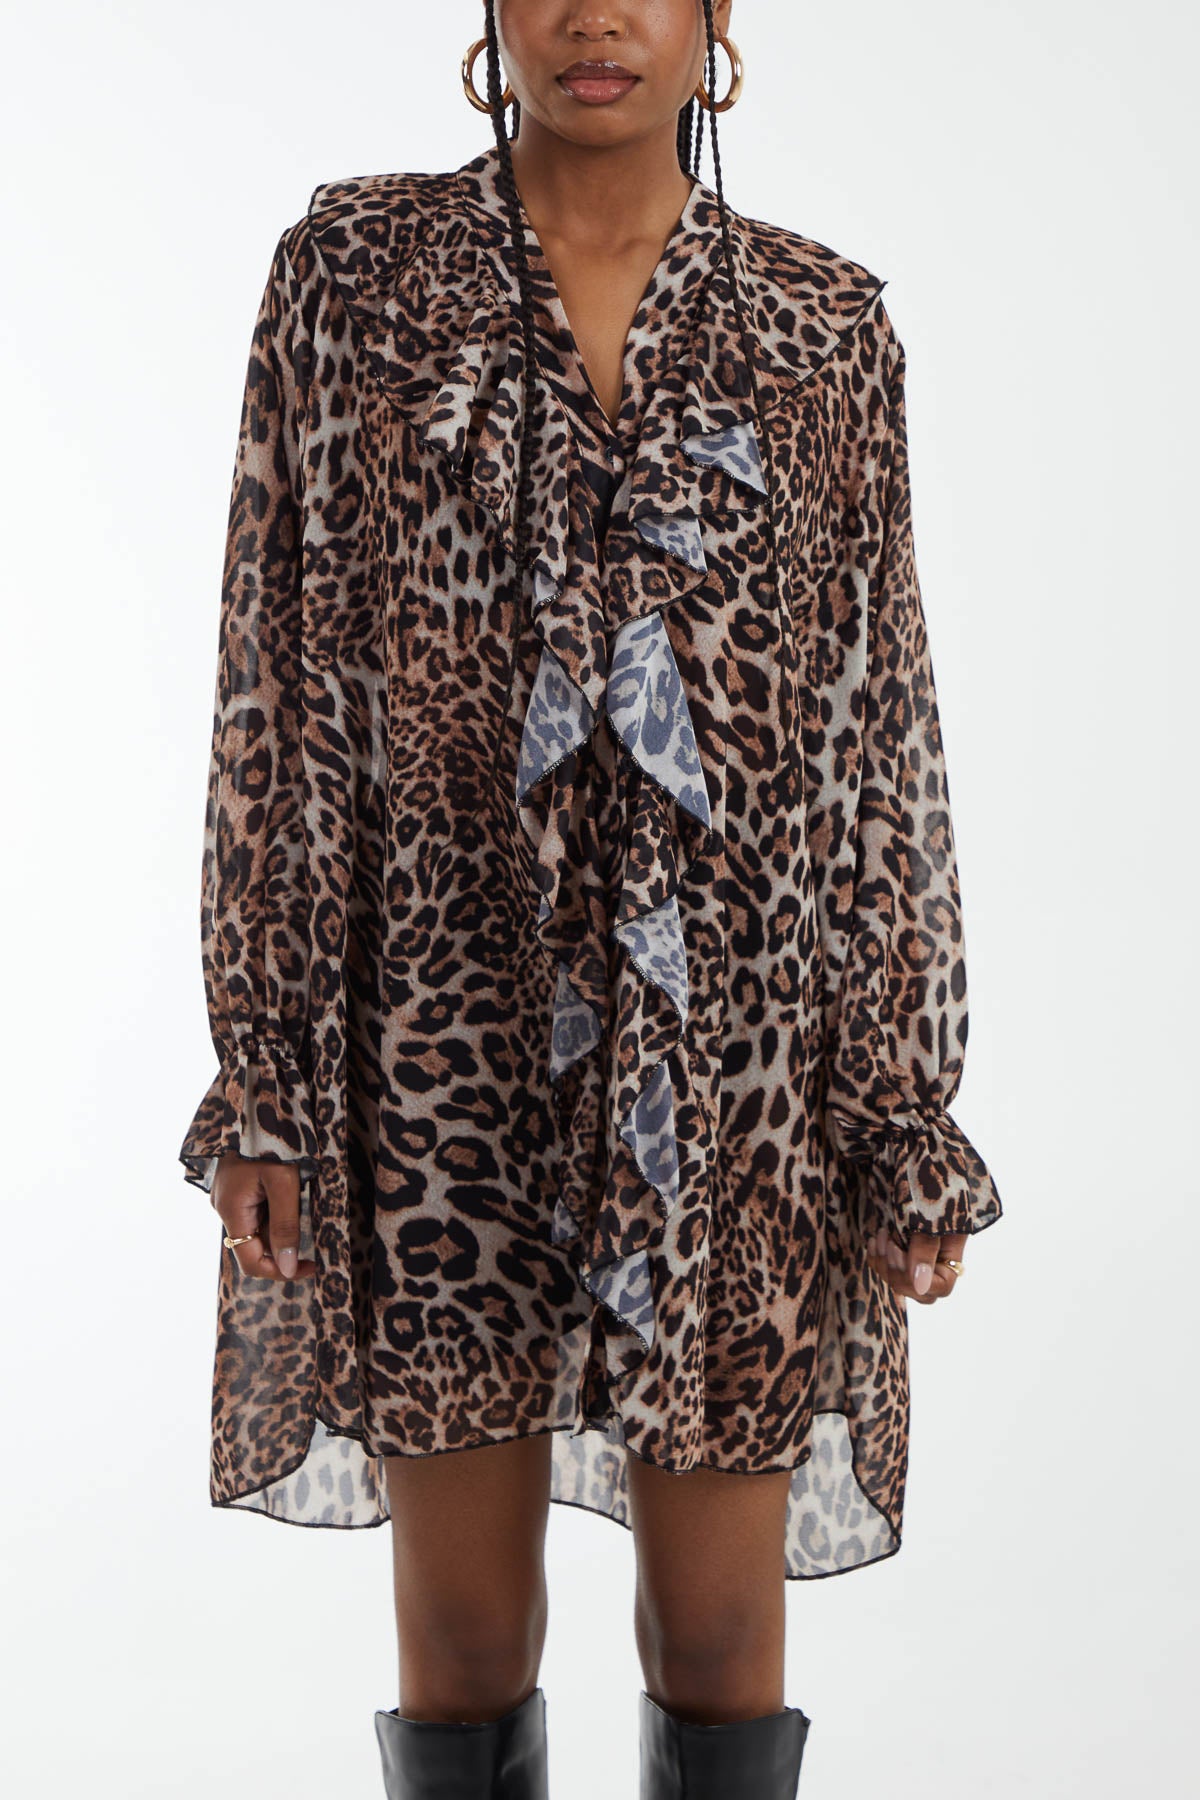 Chiffon Leopard Print Flounce Mini Dress/Top